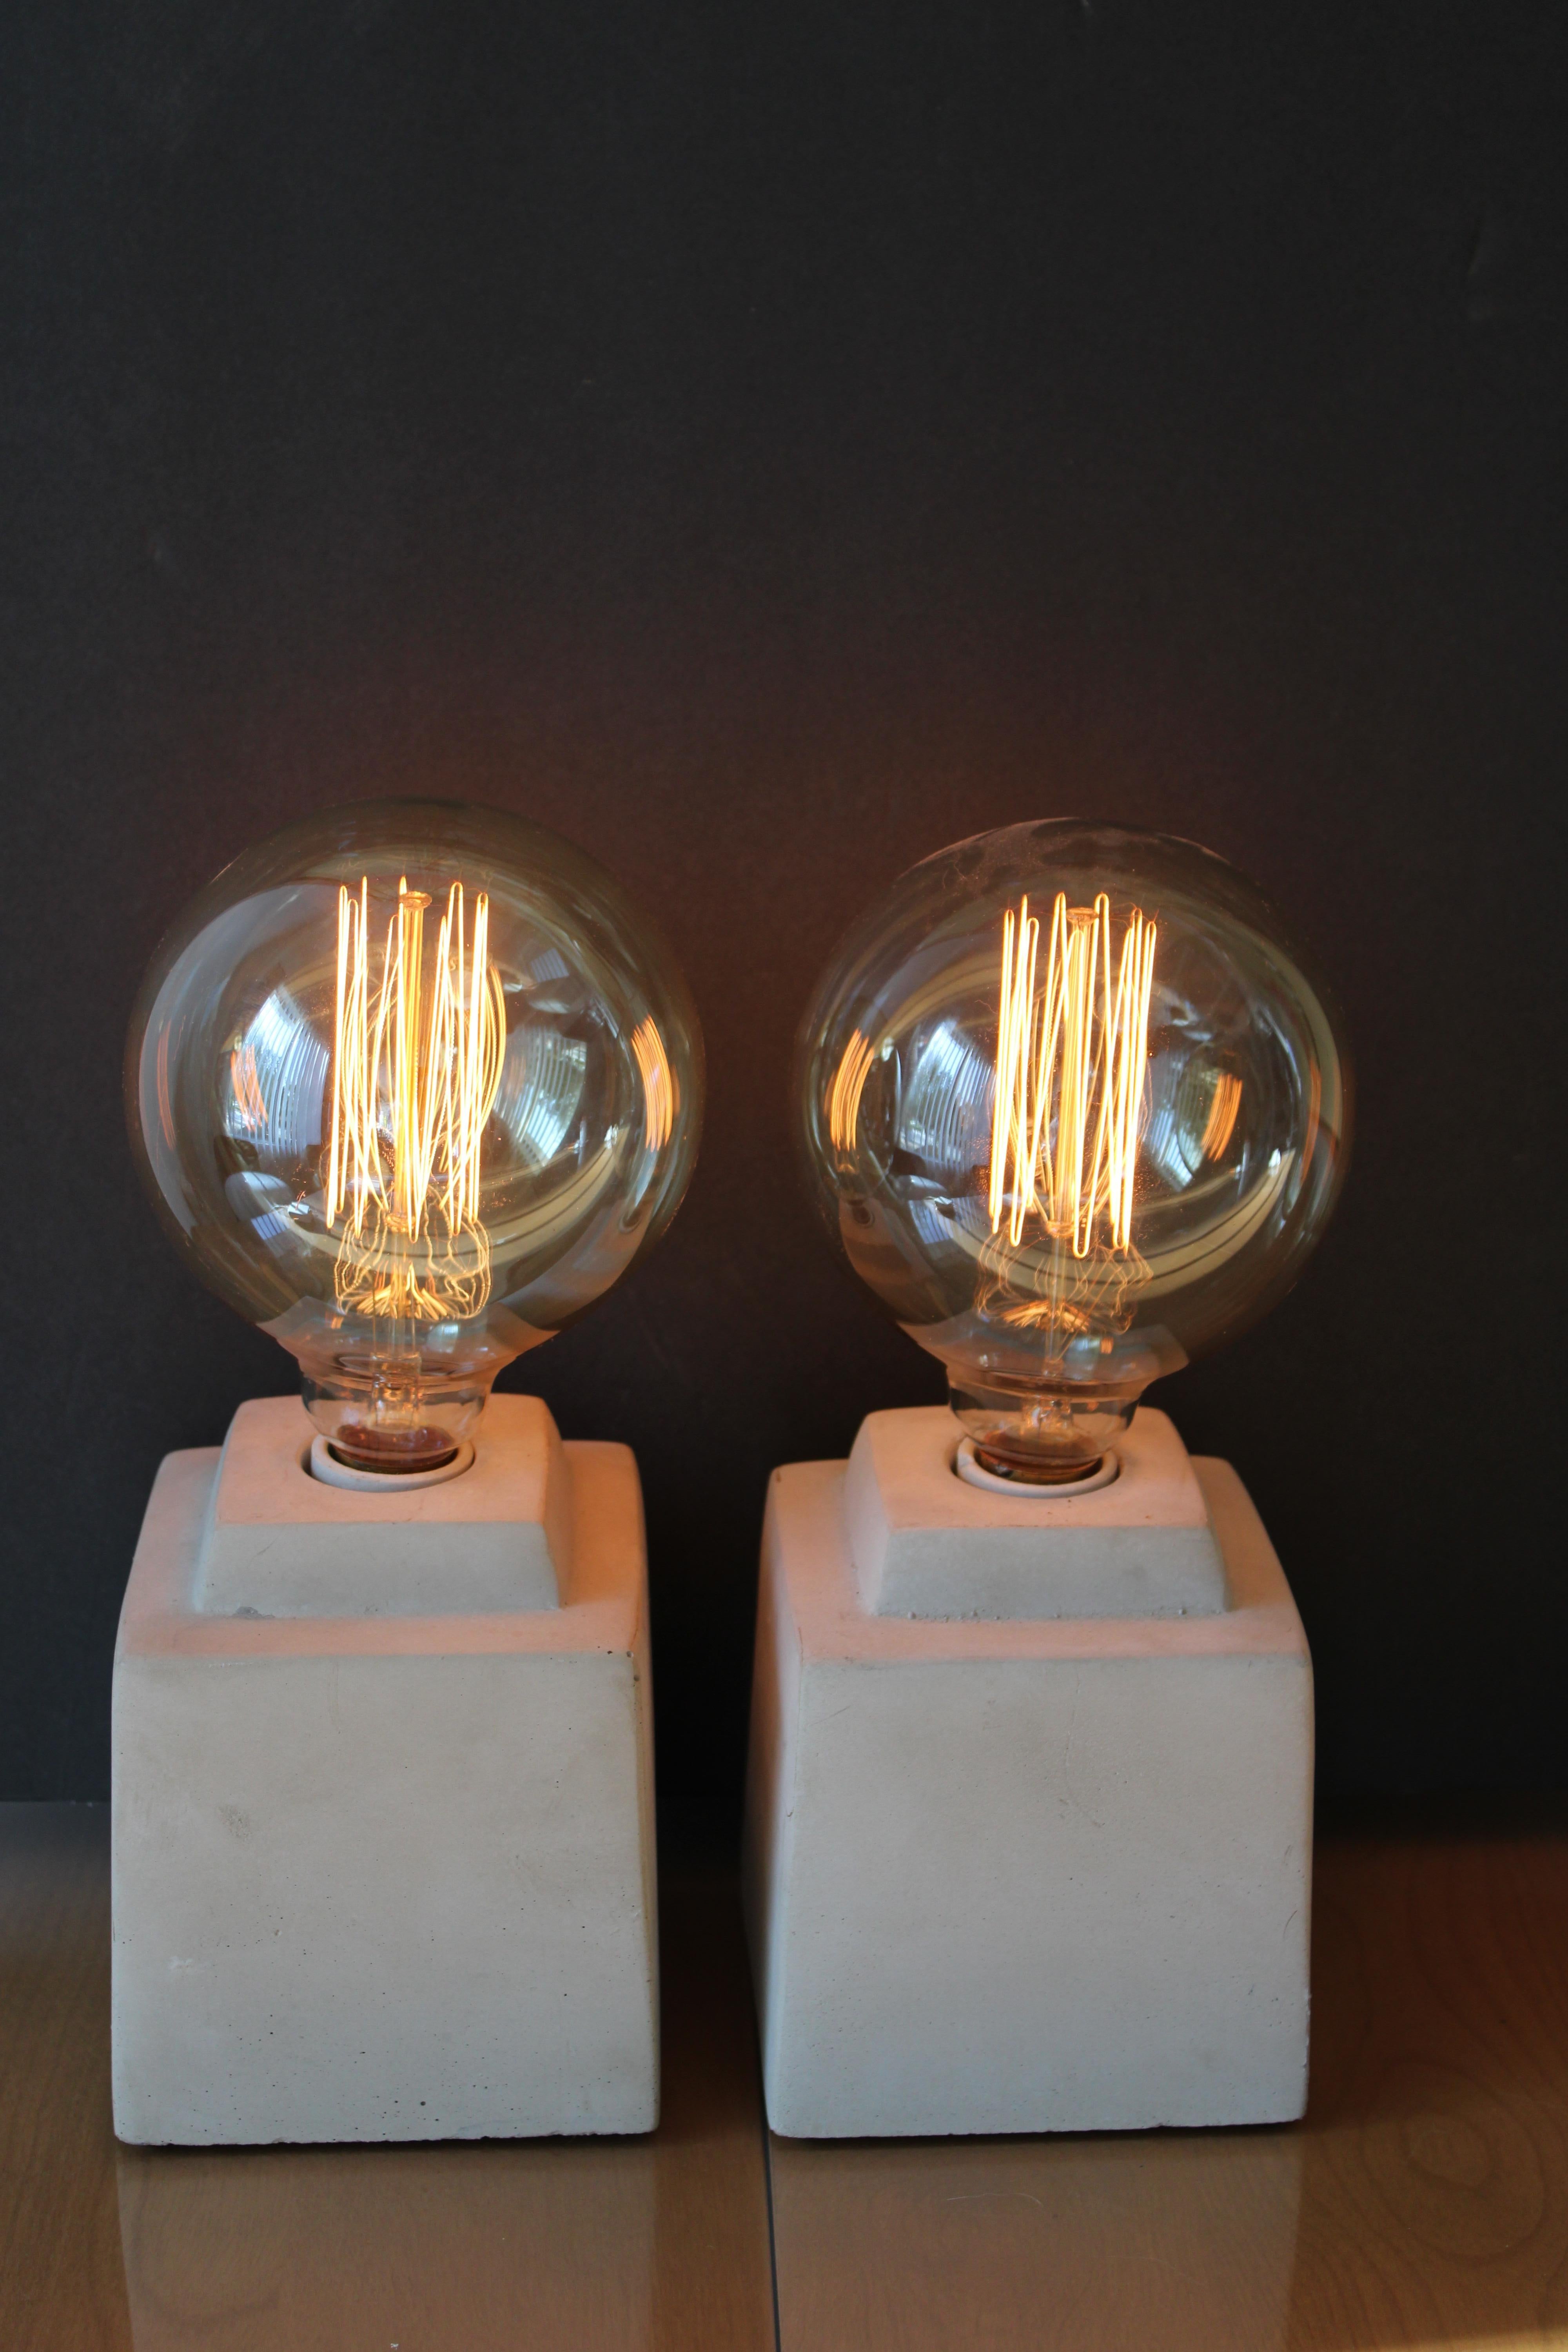 Pair of custom made ceramic lamps. Ceramic portions measure 4.75